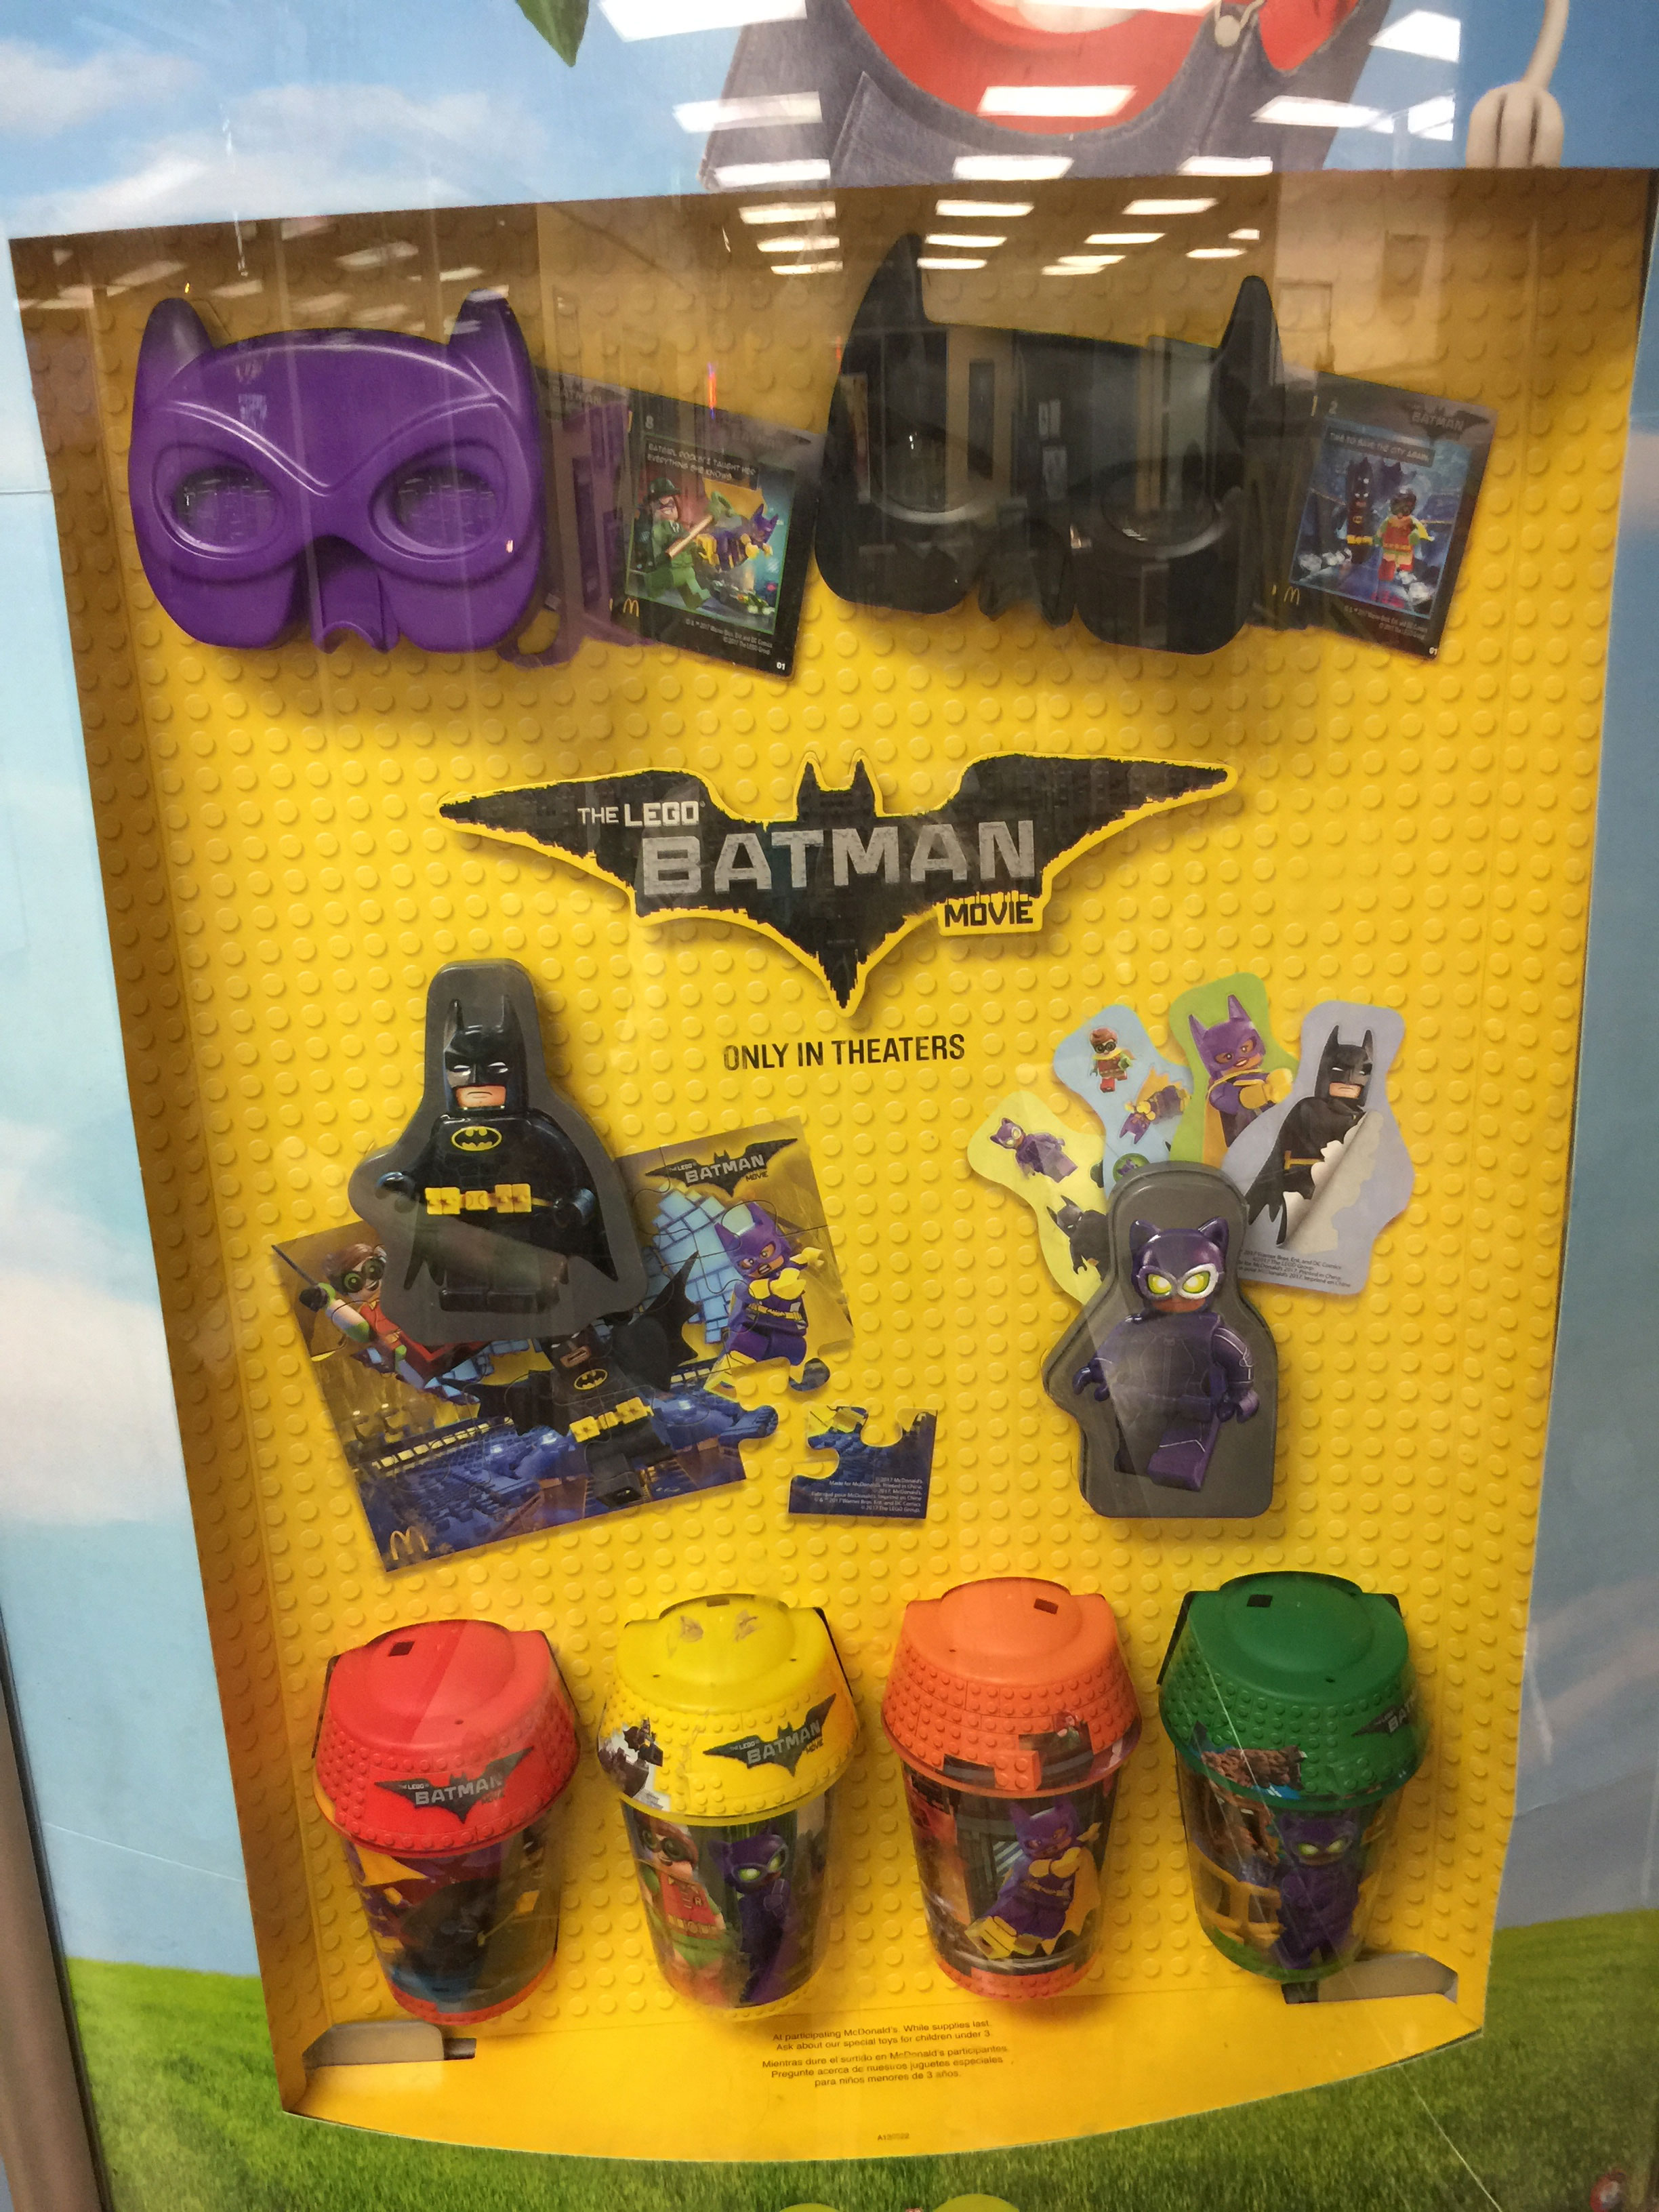 The LEGO Batman Movie McDonald's Happy Meal Toy Tie-in - FBTB